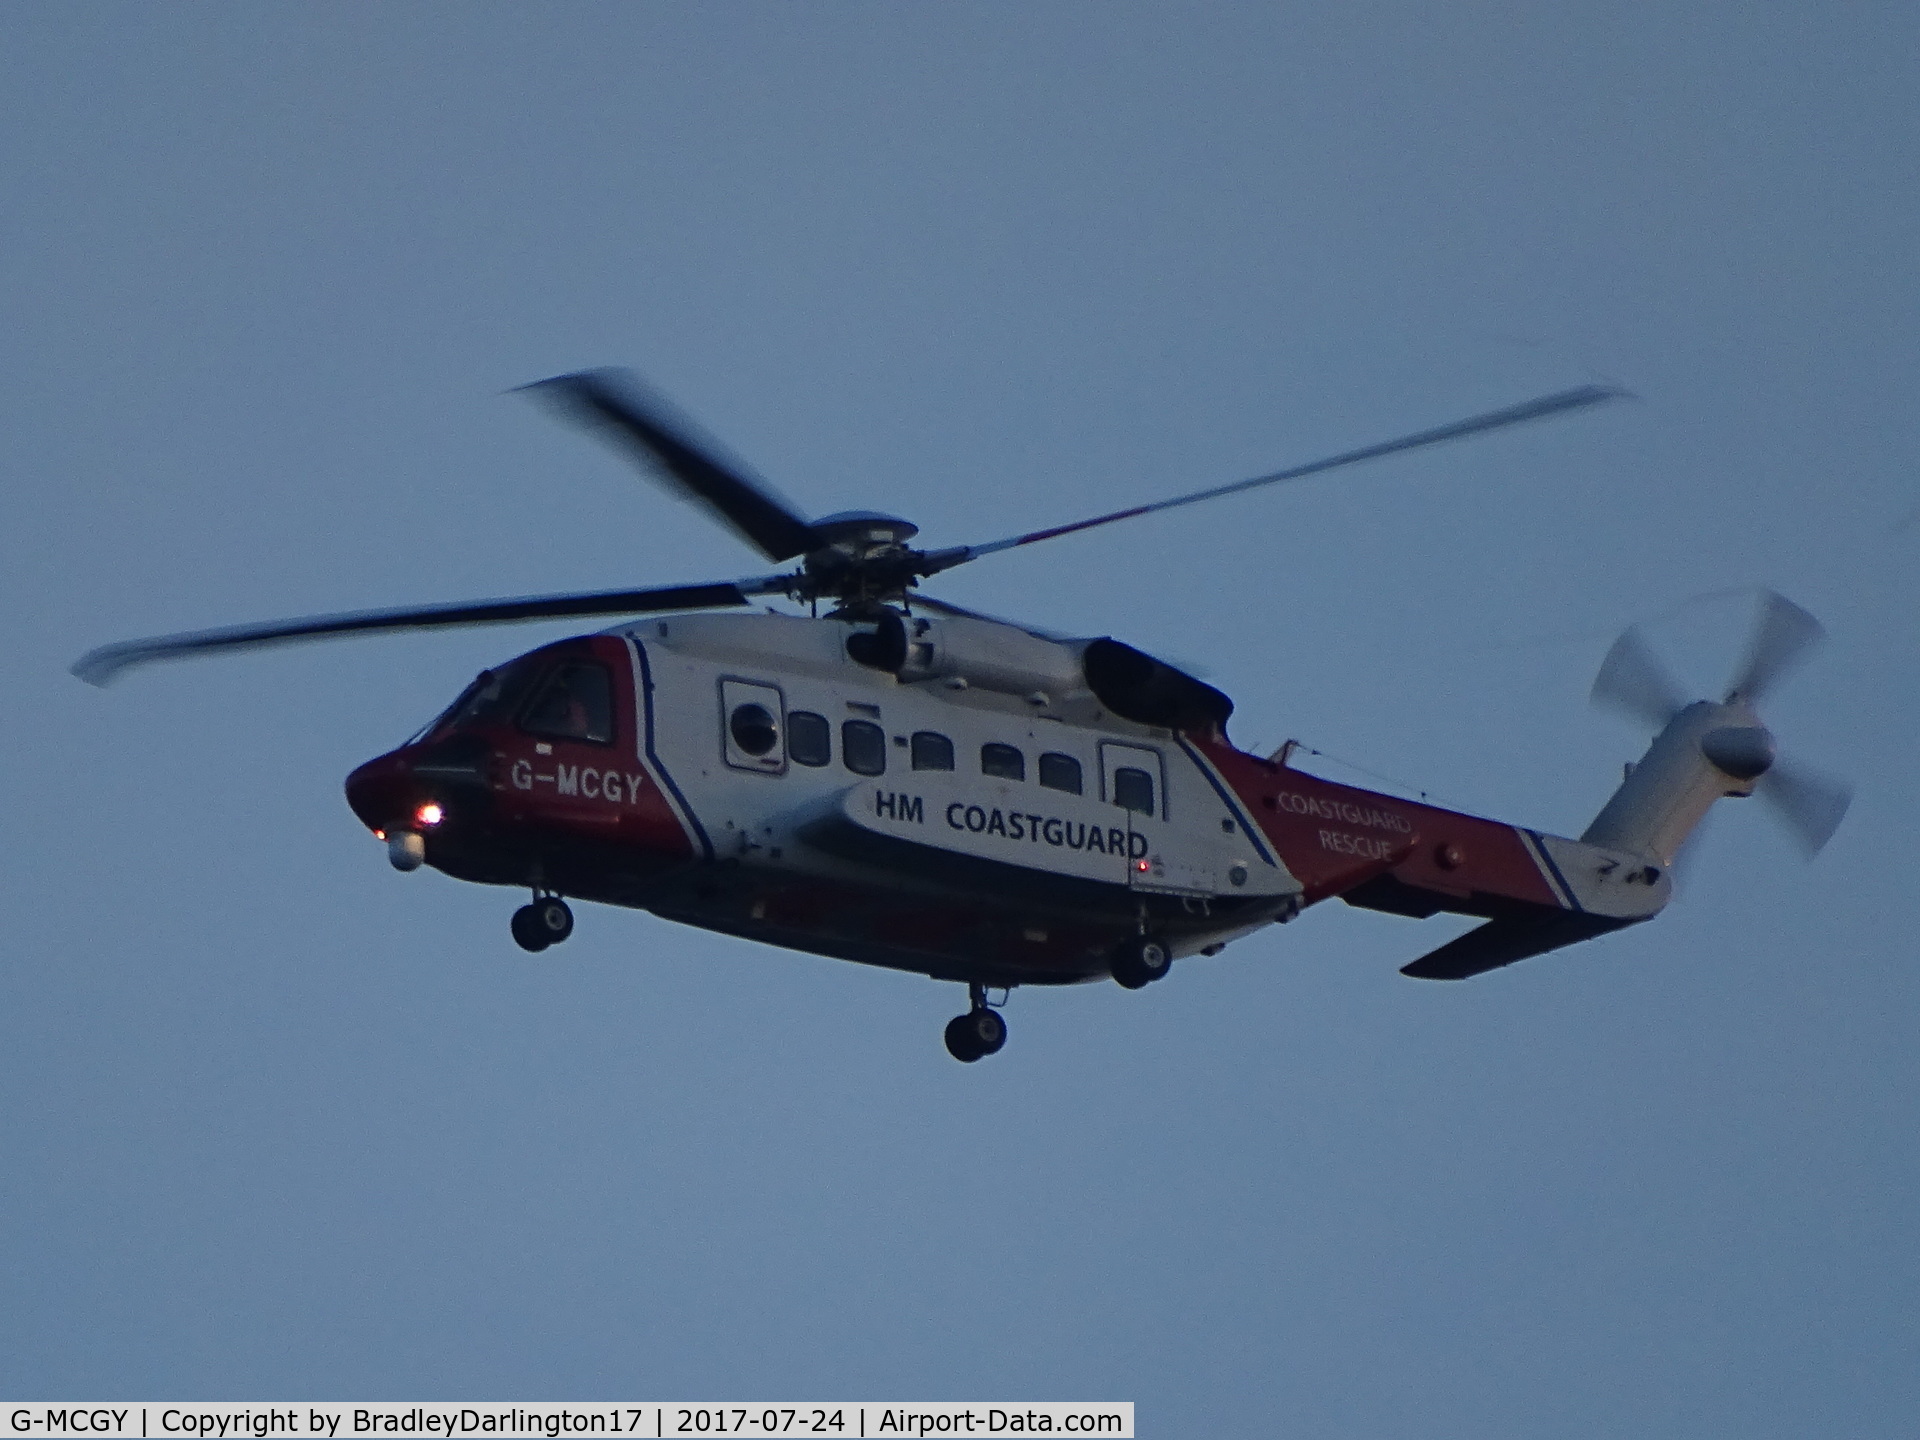 G-MCGY, 2014 Sikorsky S-92A C/N 920257, G-MCGY